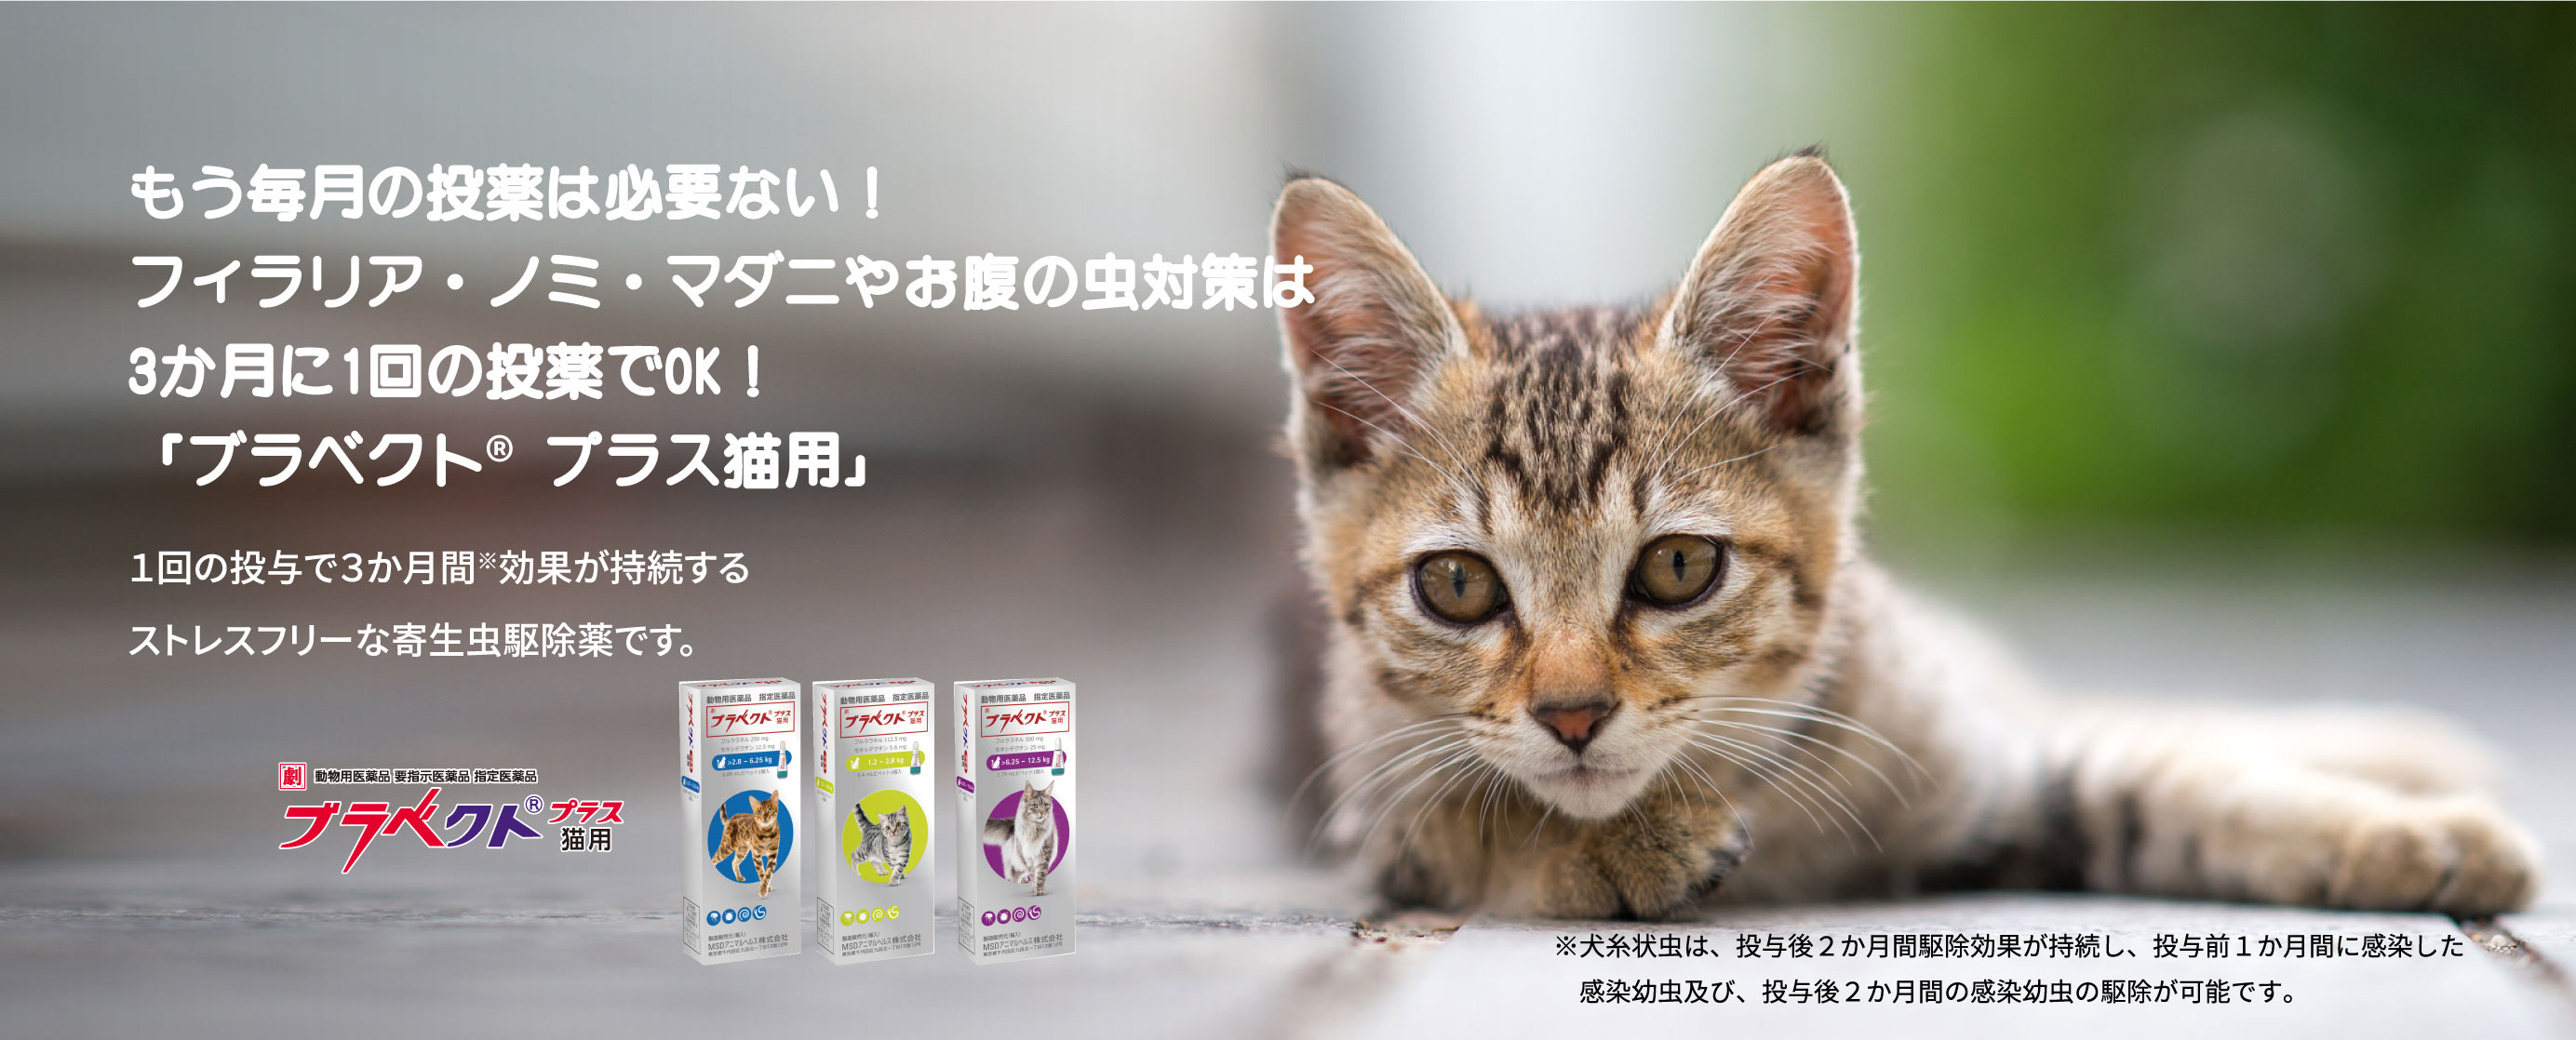 猫ノミ・猫マダニ・寄生虫対策・駆除なら3か月に1回 | ブラベクト®プラス猫用